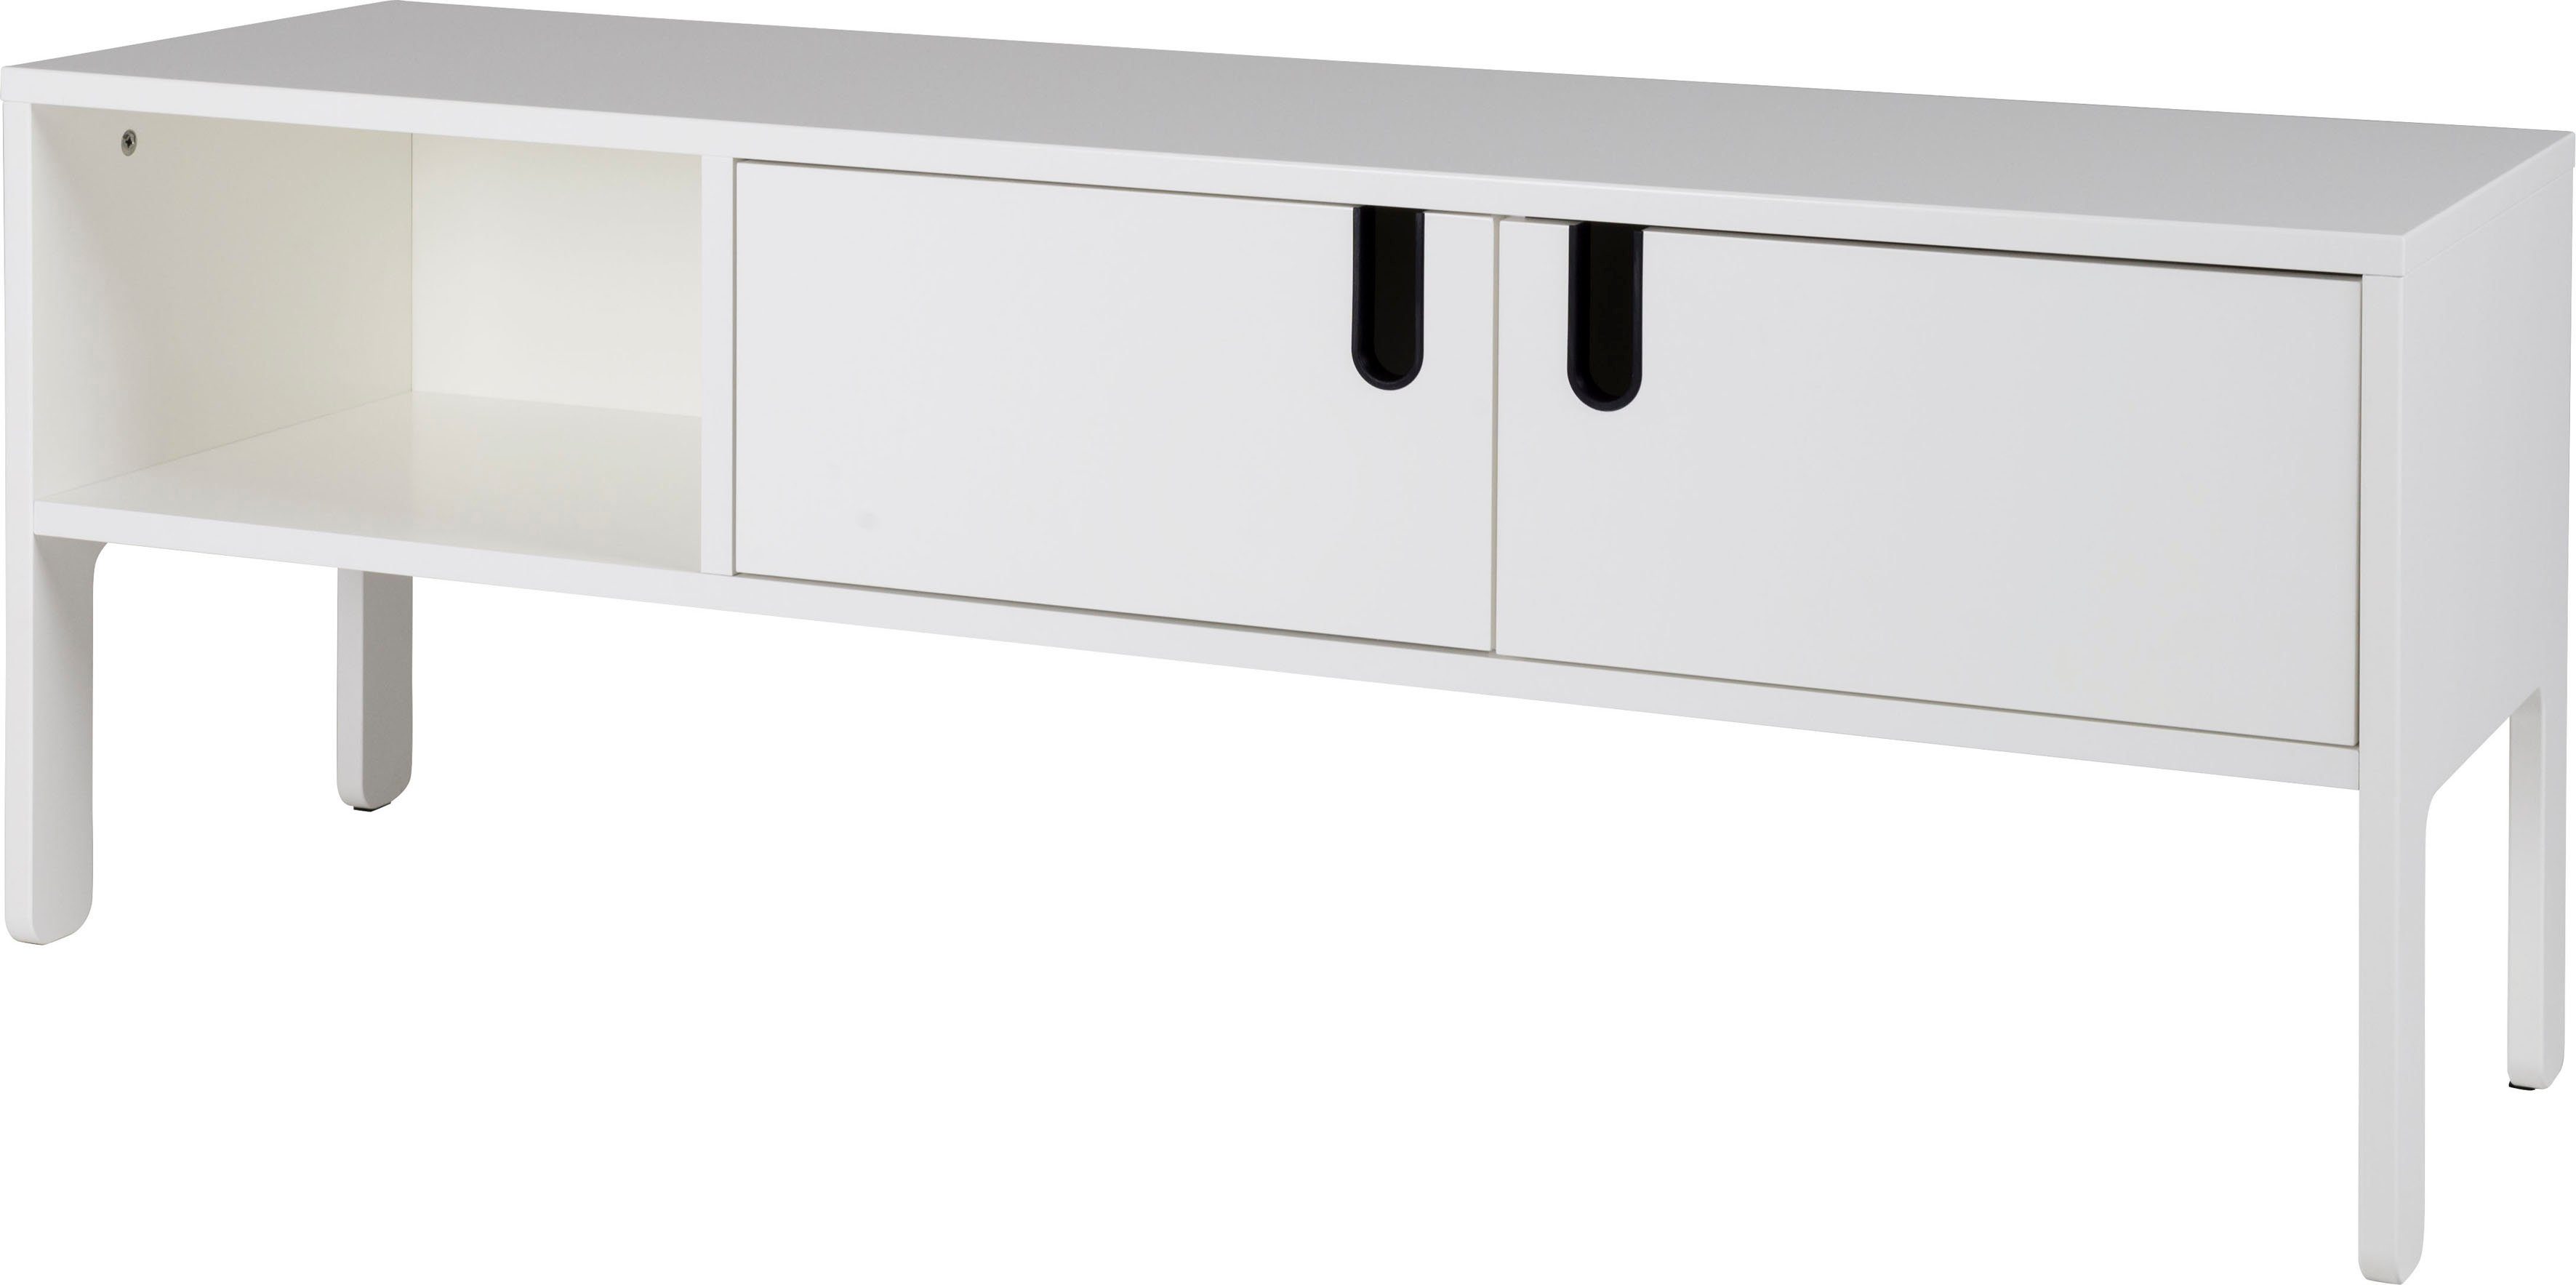 Tenzo Lowboard LIPP, mit 2 Türen und 2 offenen Fächern, Design von